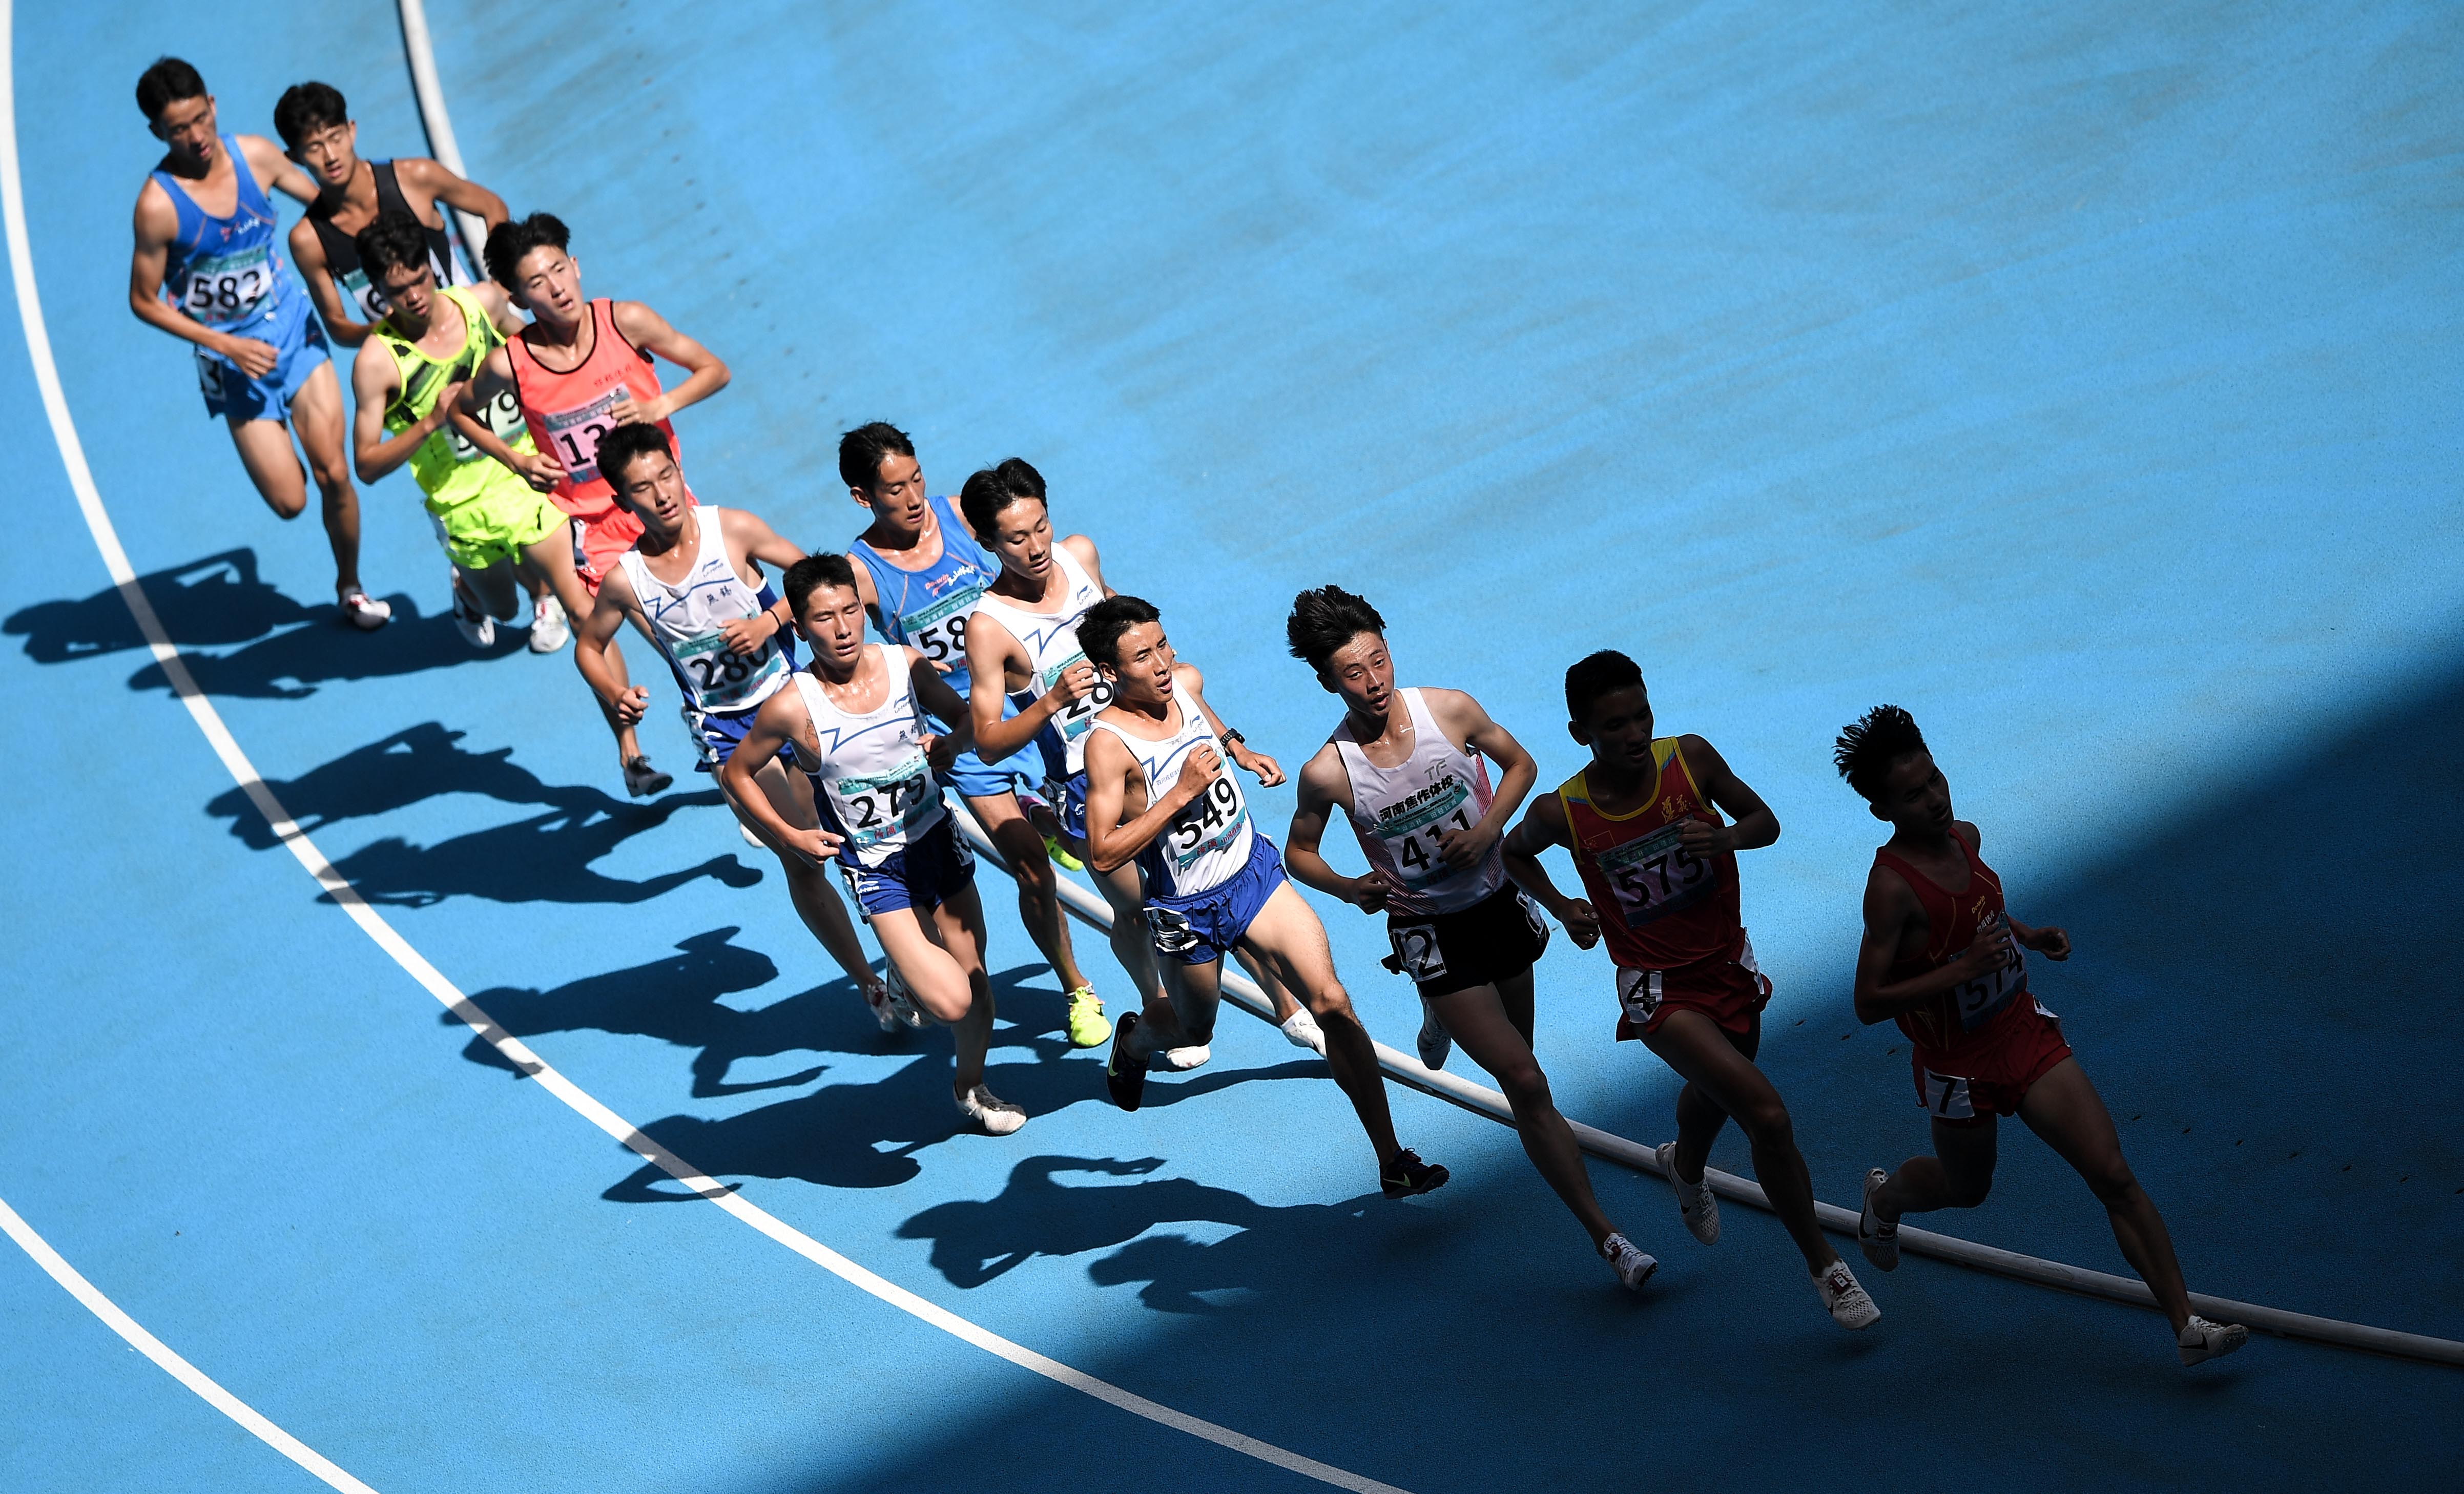 田径项目体校甲组男子10000米决赛中,焦作市体育运动学校选手石智江以